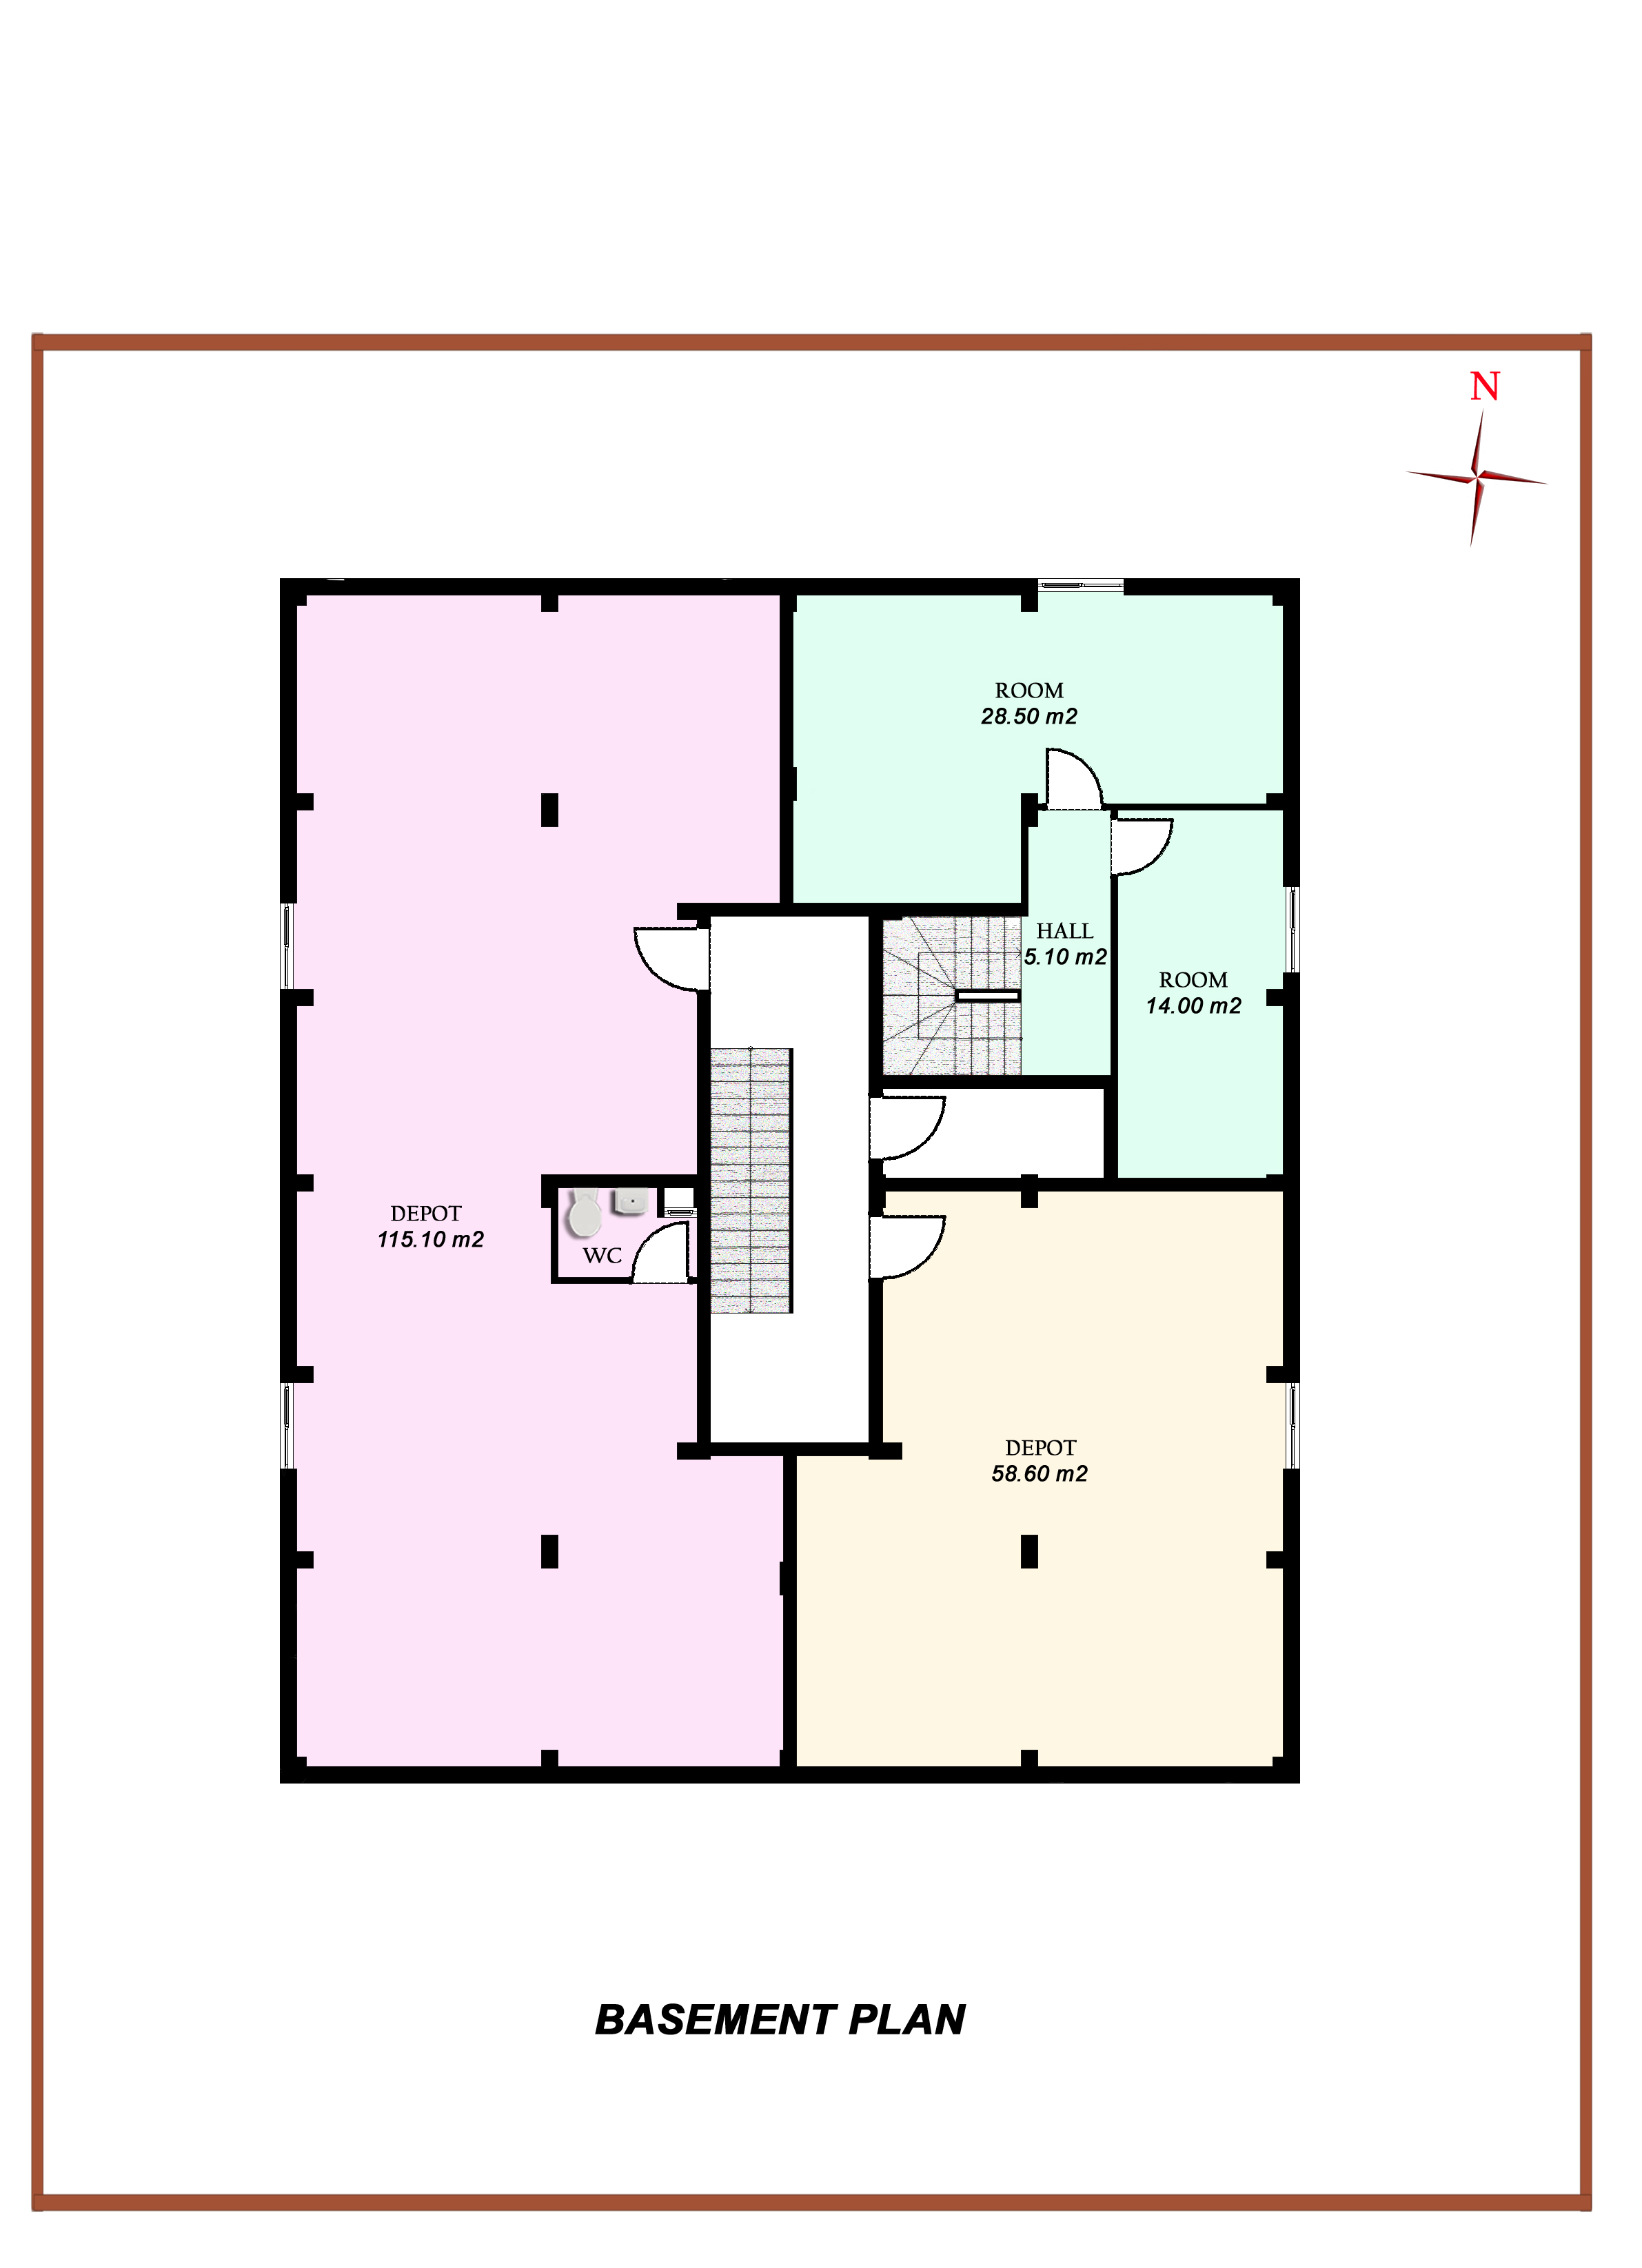 basement apartment plans ideas photo - 1